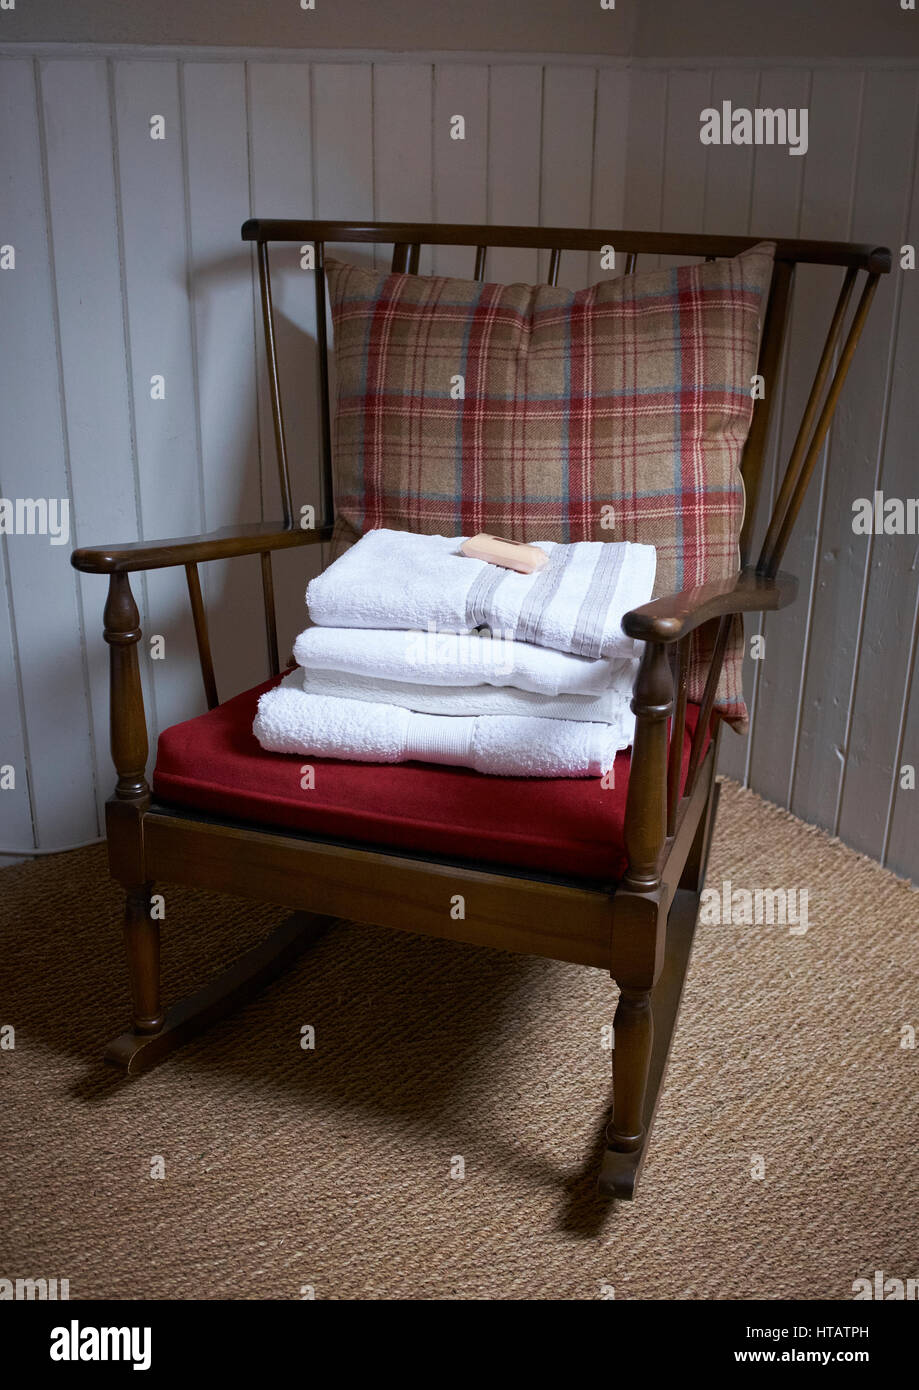 Eine saubere Handtücher auf einem bettmonitor Stuhl bereit für den nächsten Gast. Stockfoto